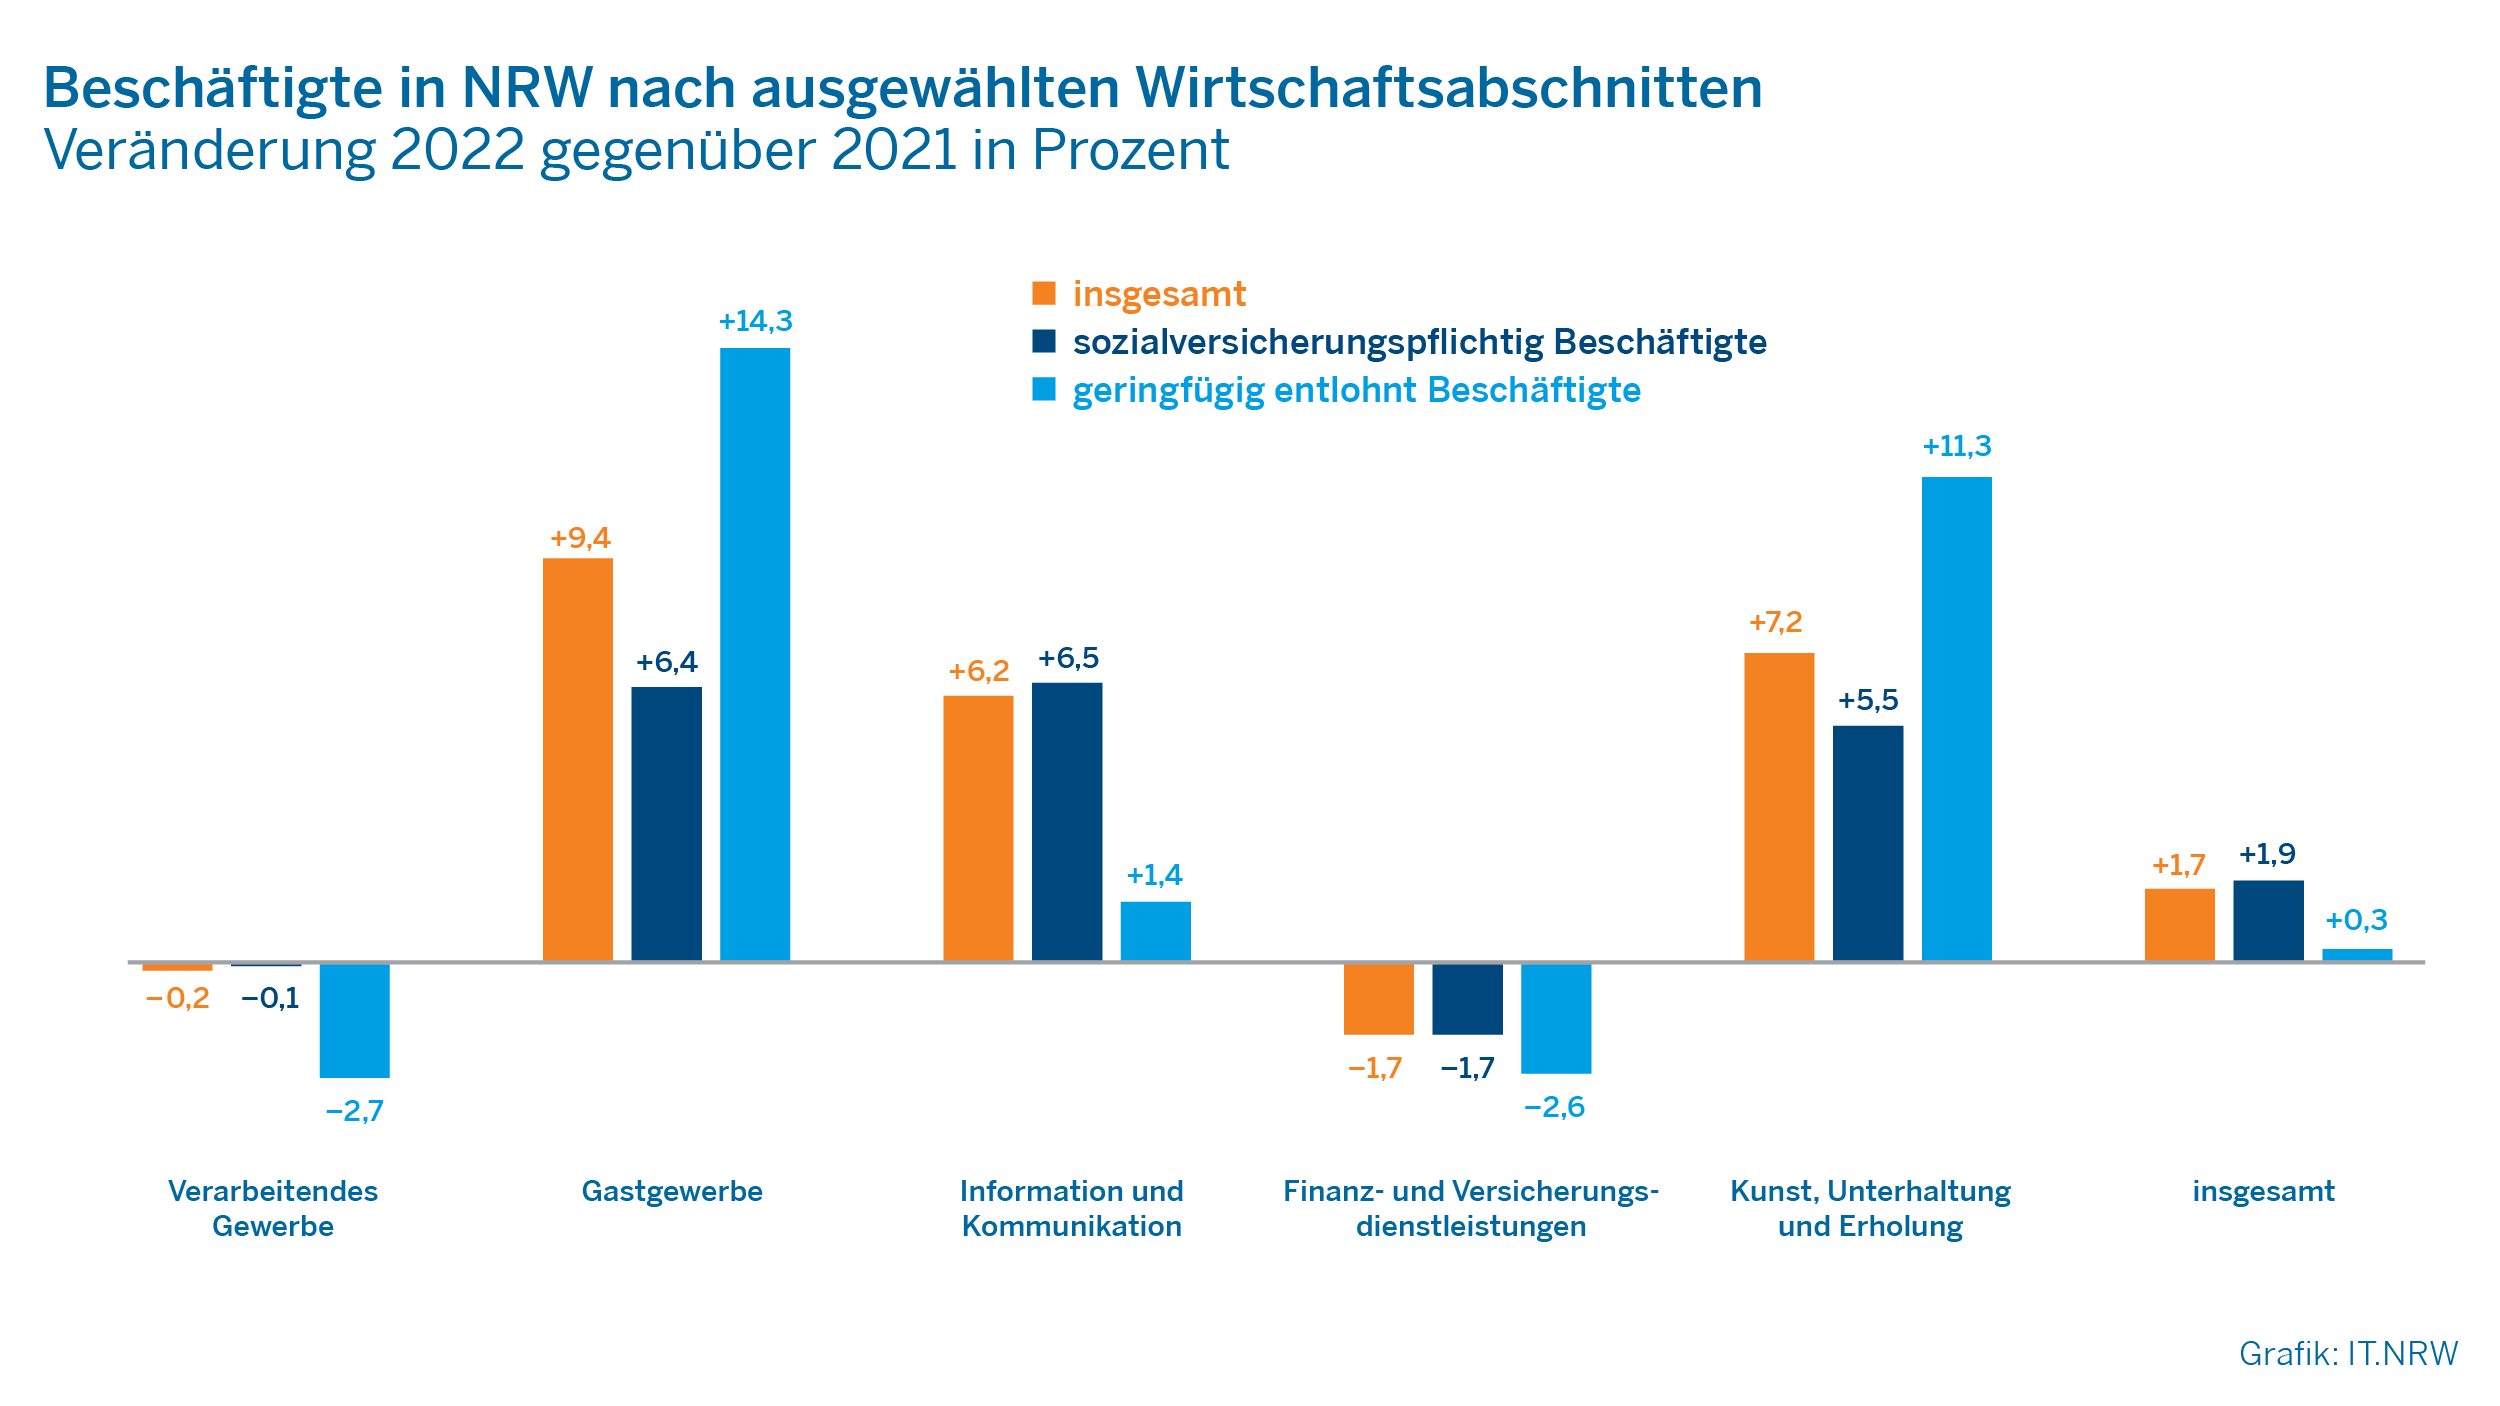 Beschäftigte in NRW nach ausgewählten Wirtschaftsabschnitten